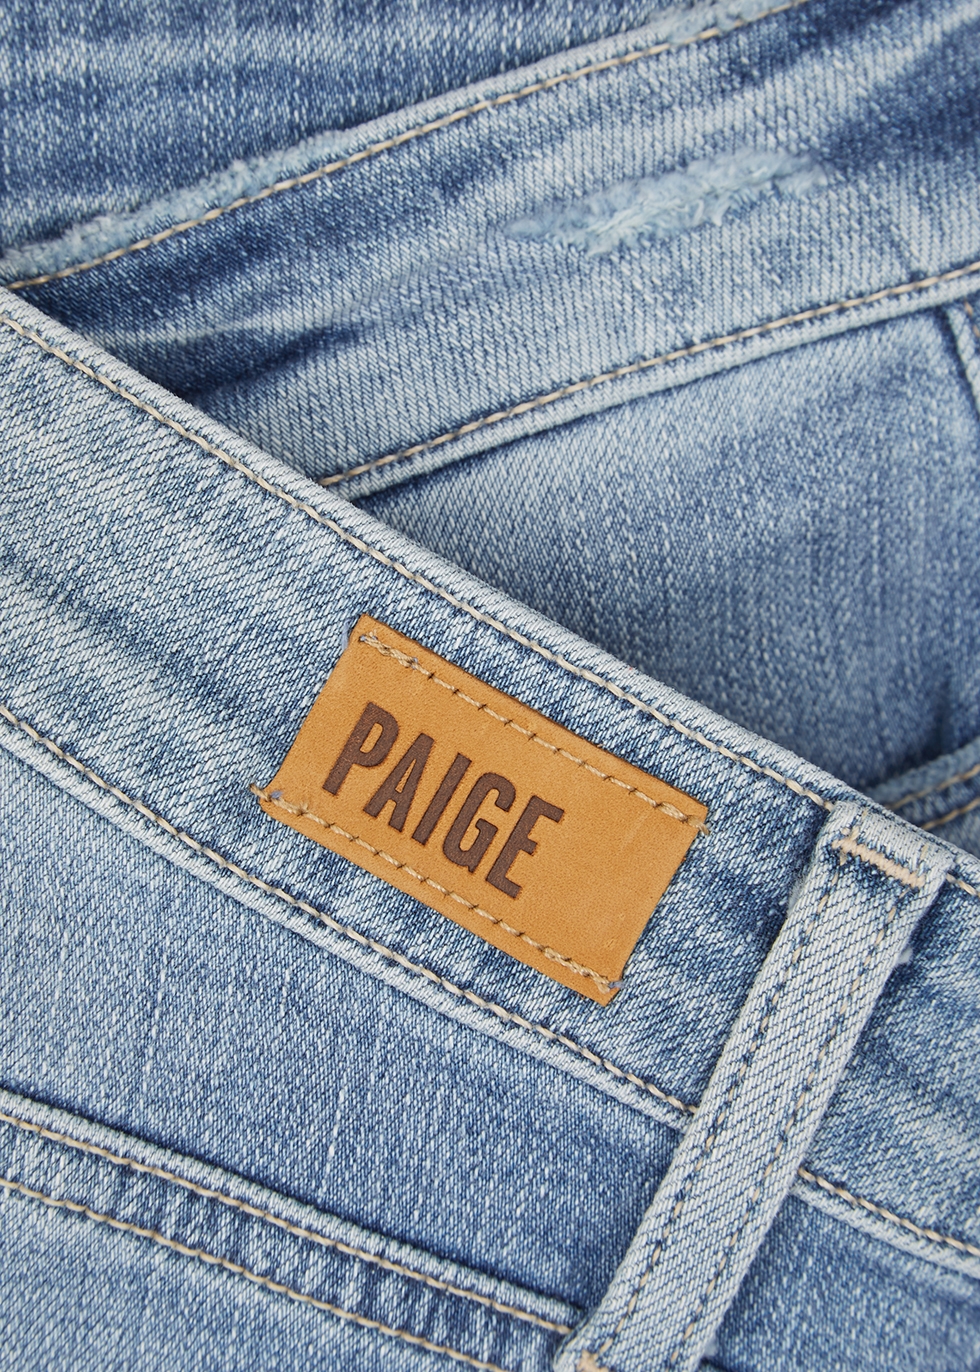 paige light blue jeans